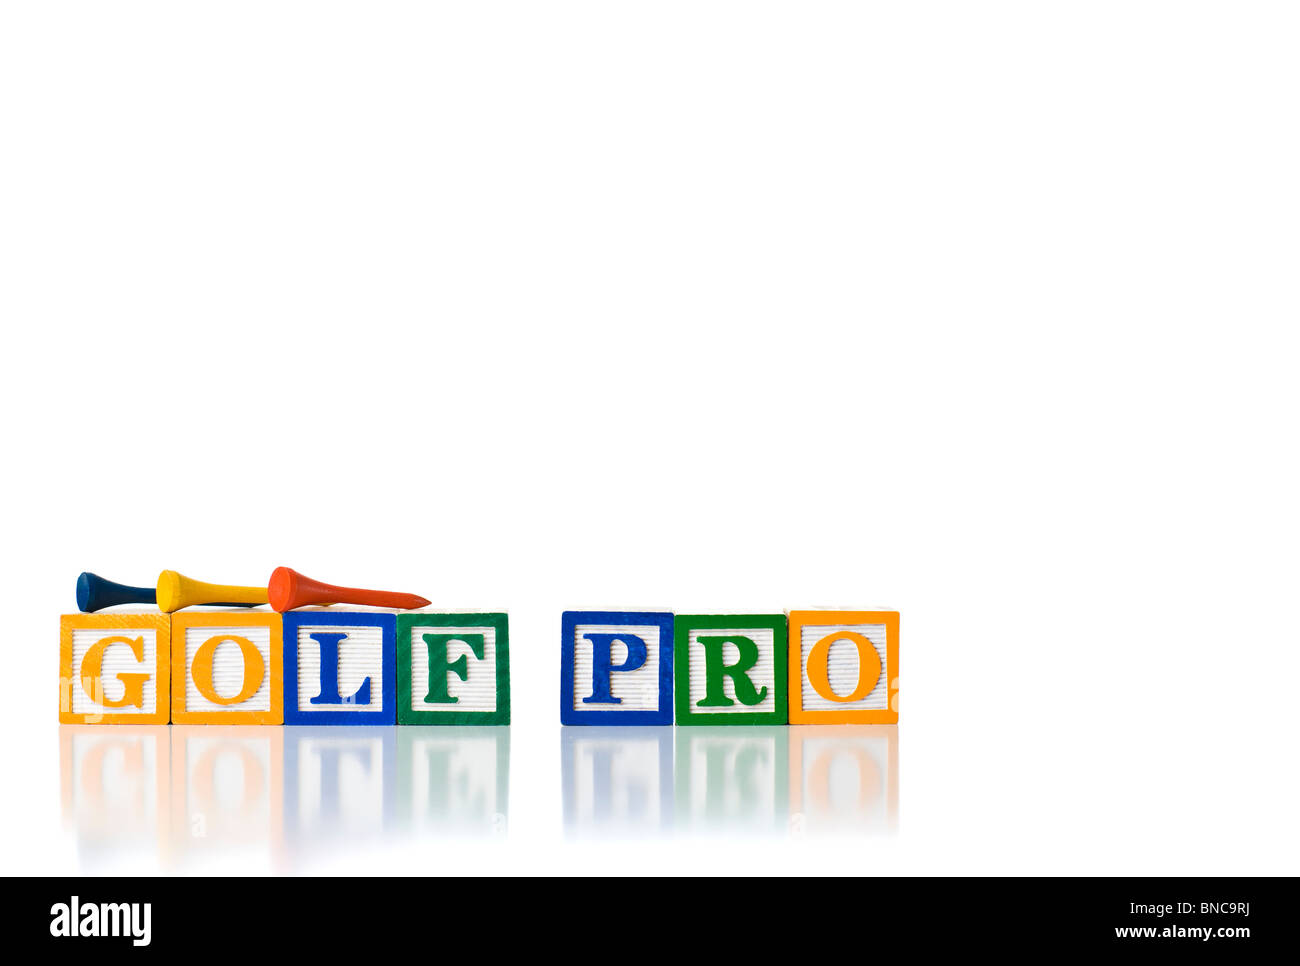 Bunte Kinder-Blöcke Rechtschreibung GOLF PRO mit Golf-tees Stockfoto